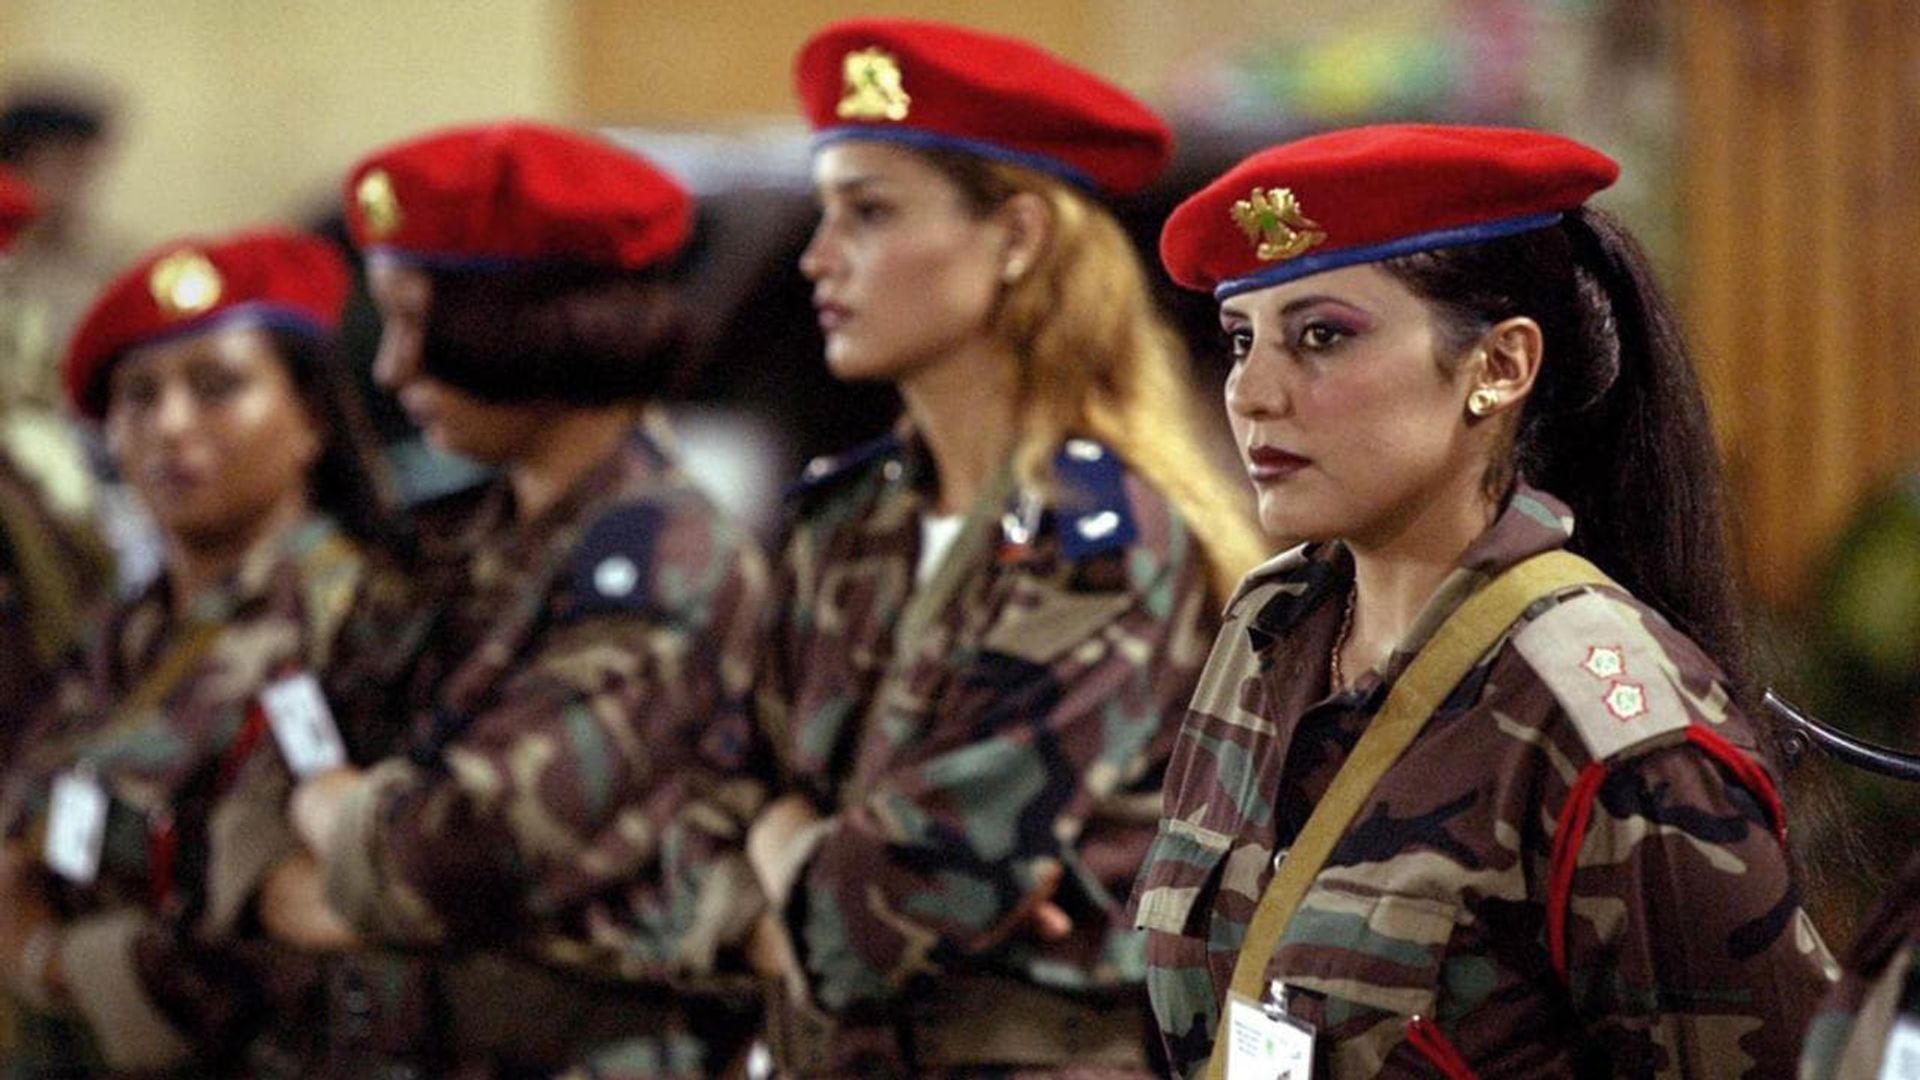 Shadows of a Leader: Qaddafi's Female Bodyguards background